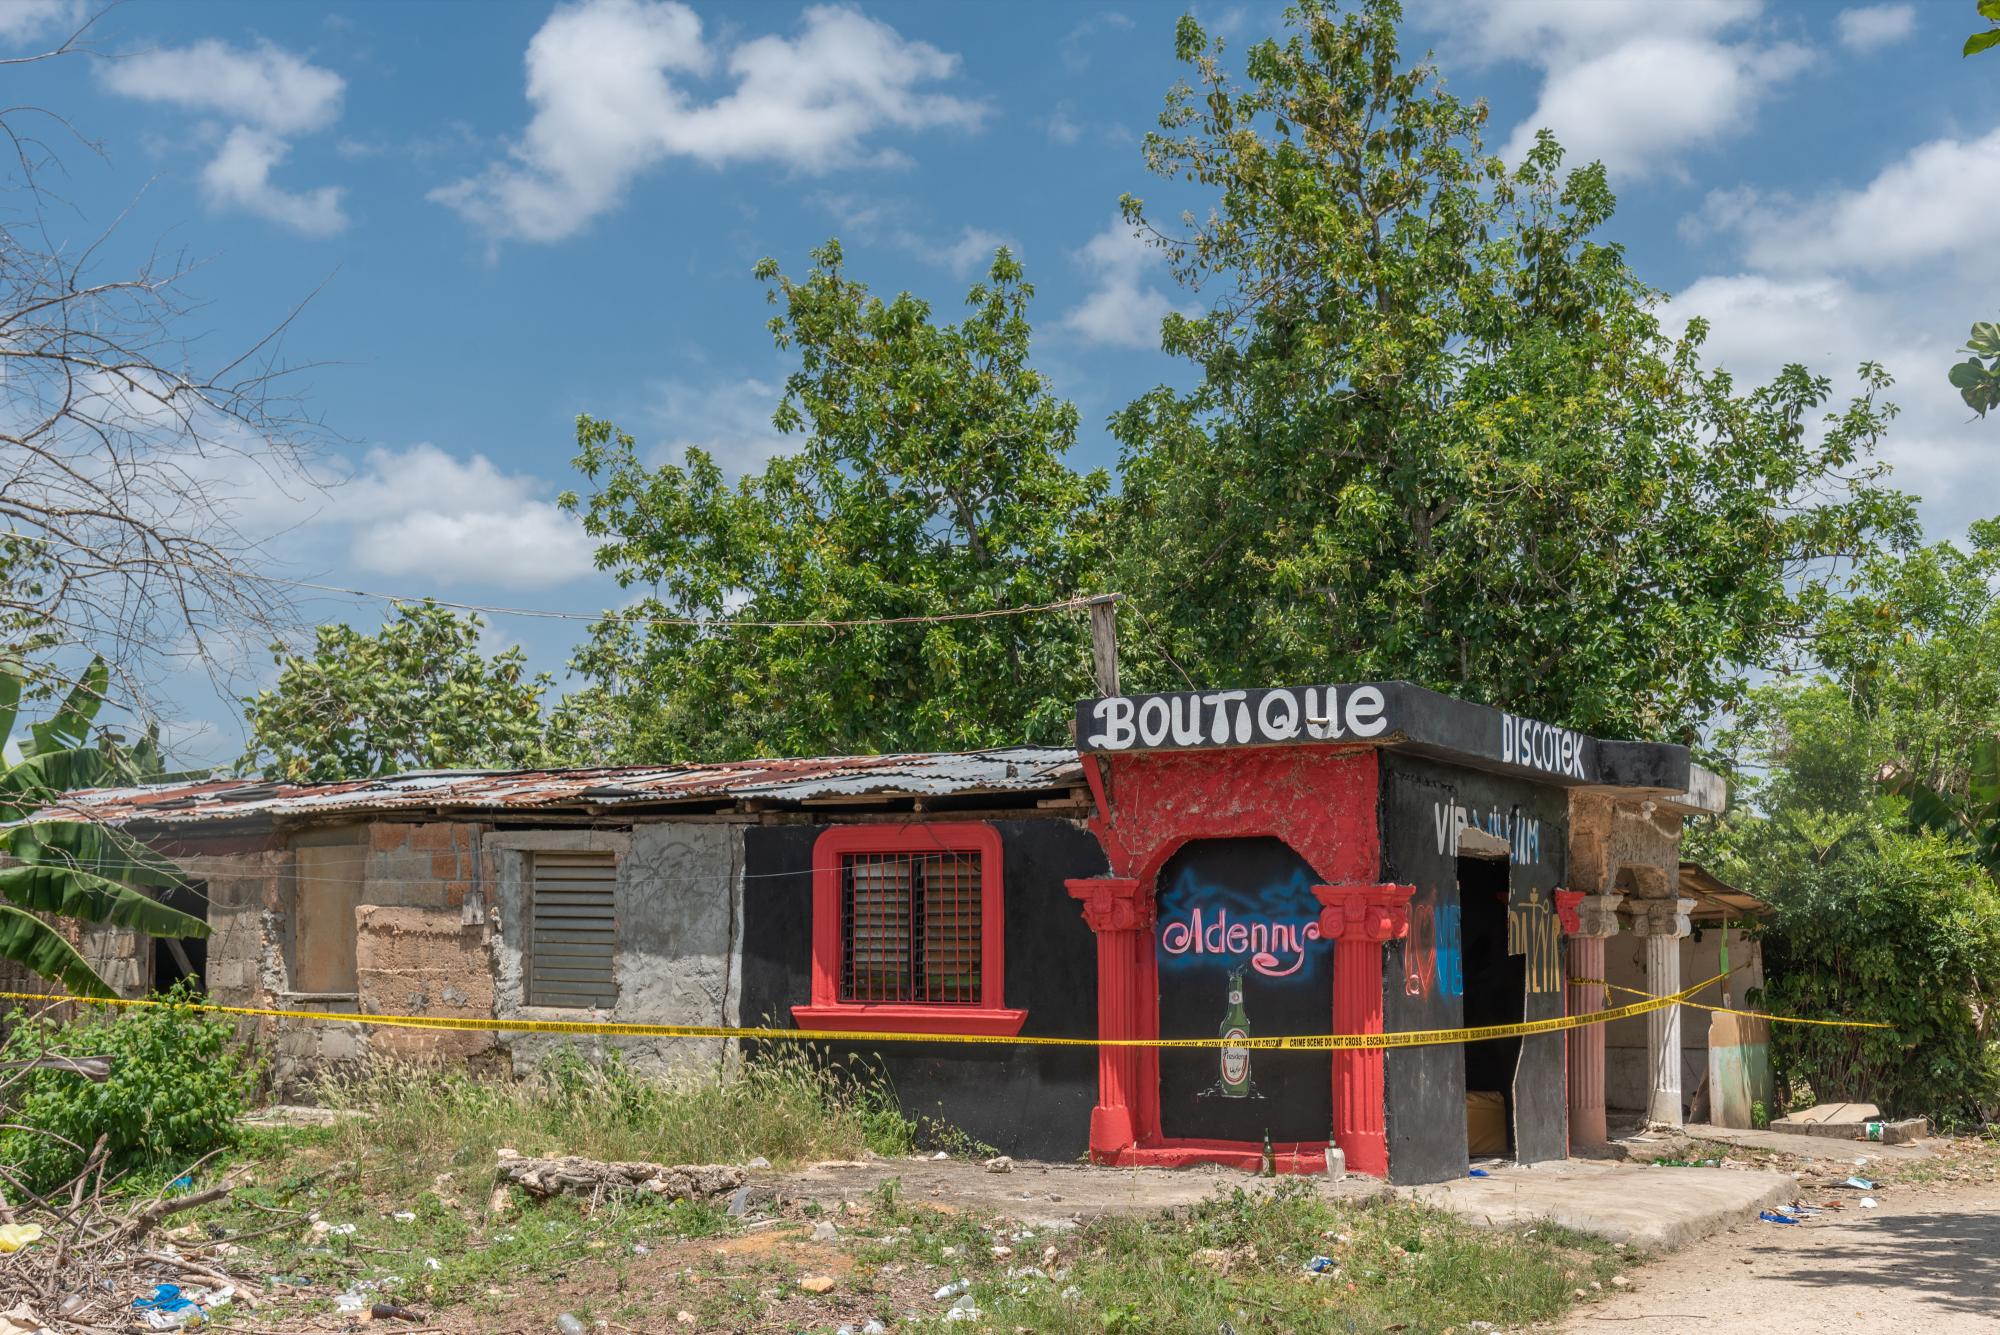 Como una Boutique Diskotek define su propietario al bar Adenny, lugar en el que tuvo lugar un tiroteo la madrugada del lunes 19 de abril y en el que perdieron la vida cuatro personas (Foto: Pedro Bazil)